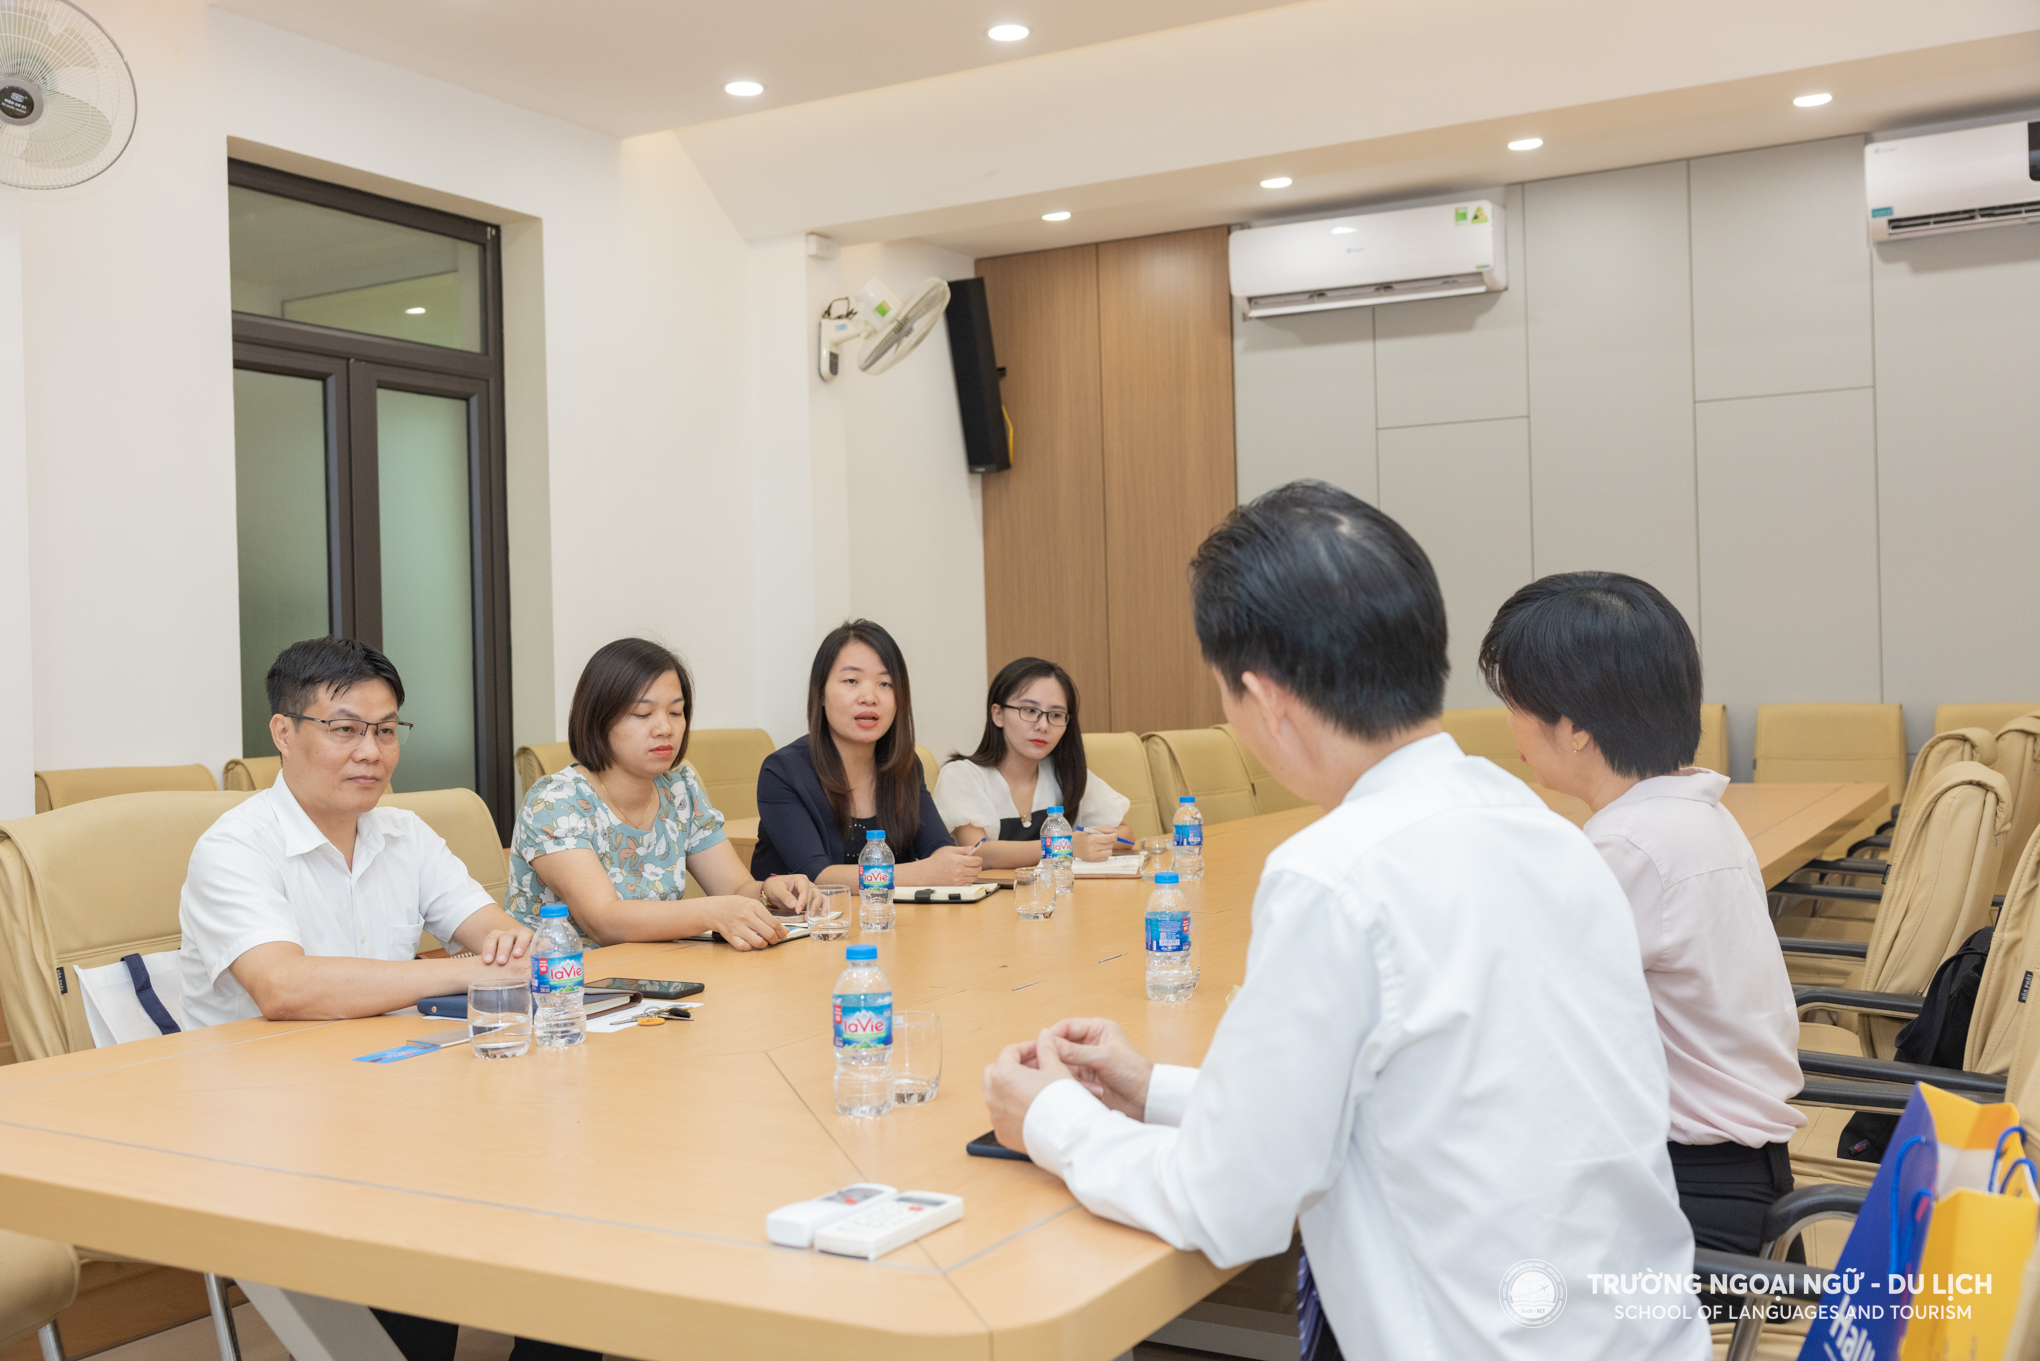 Trường Ngoại ngữ - Du lịch gặp mặt và kết nối hợp tác với Trung tâm văn hóa Trung Quốc tại Hà Nội